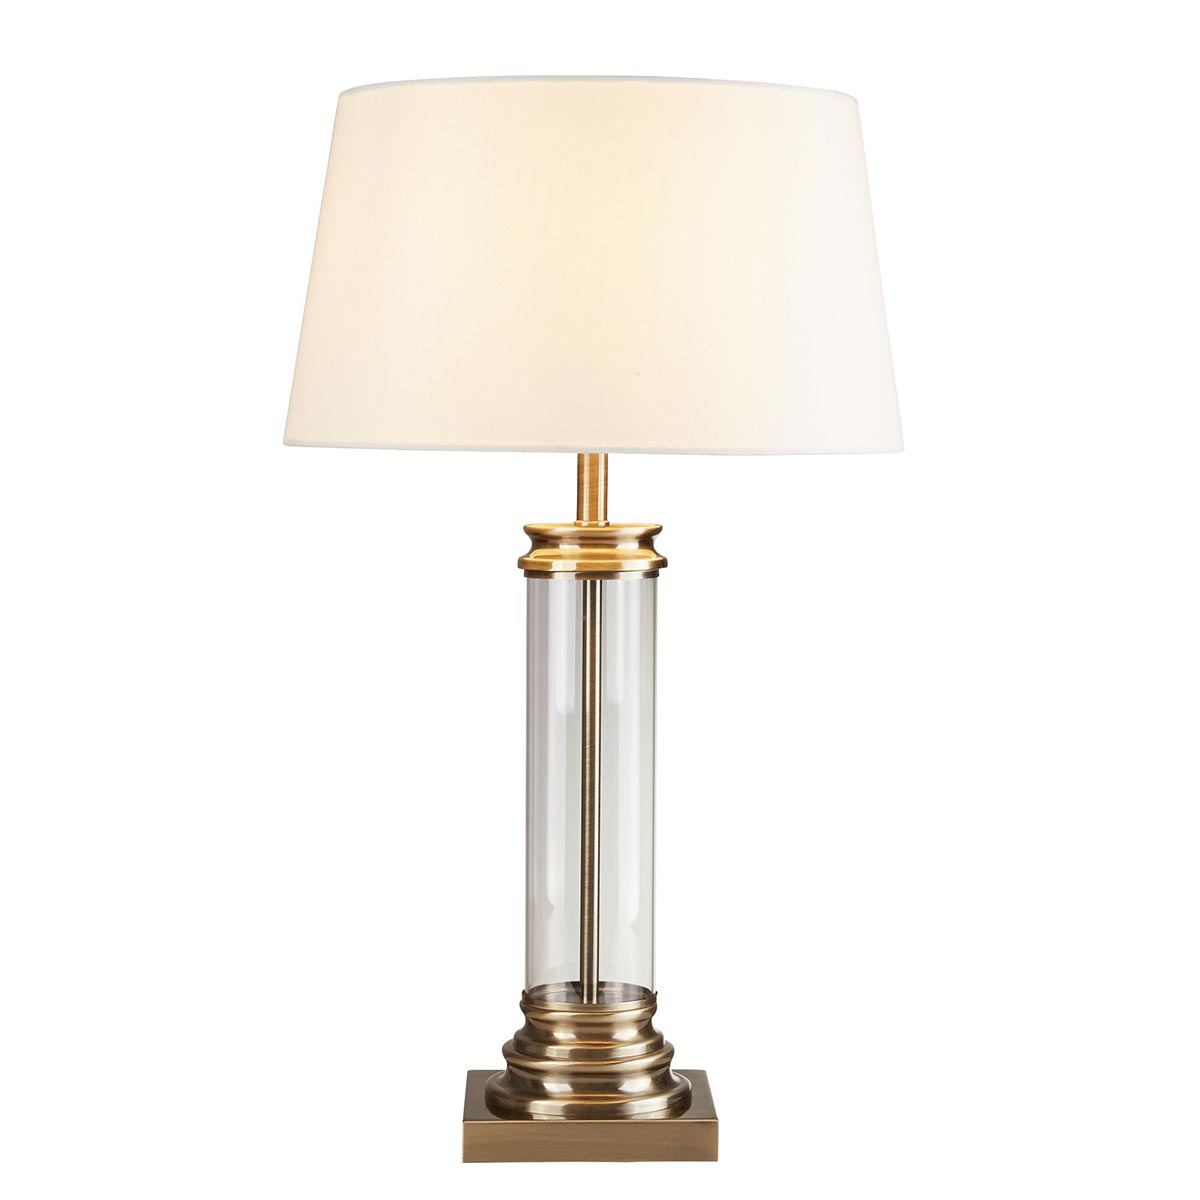 Pedestal 1 Light Glass Column Table Lamp Cream Shade Antique Brass